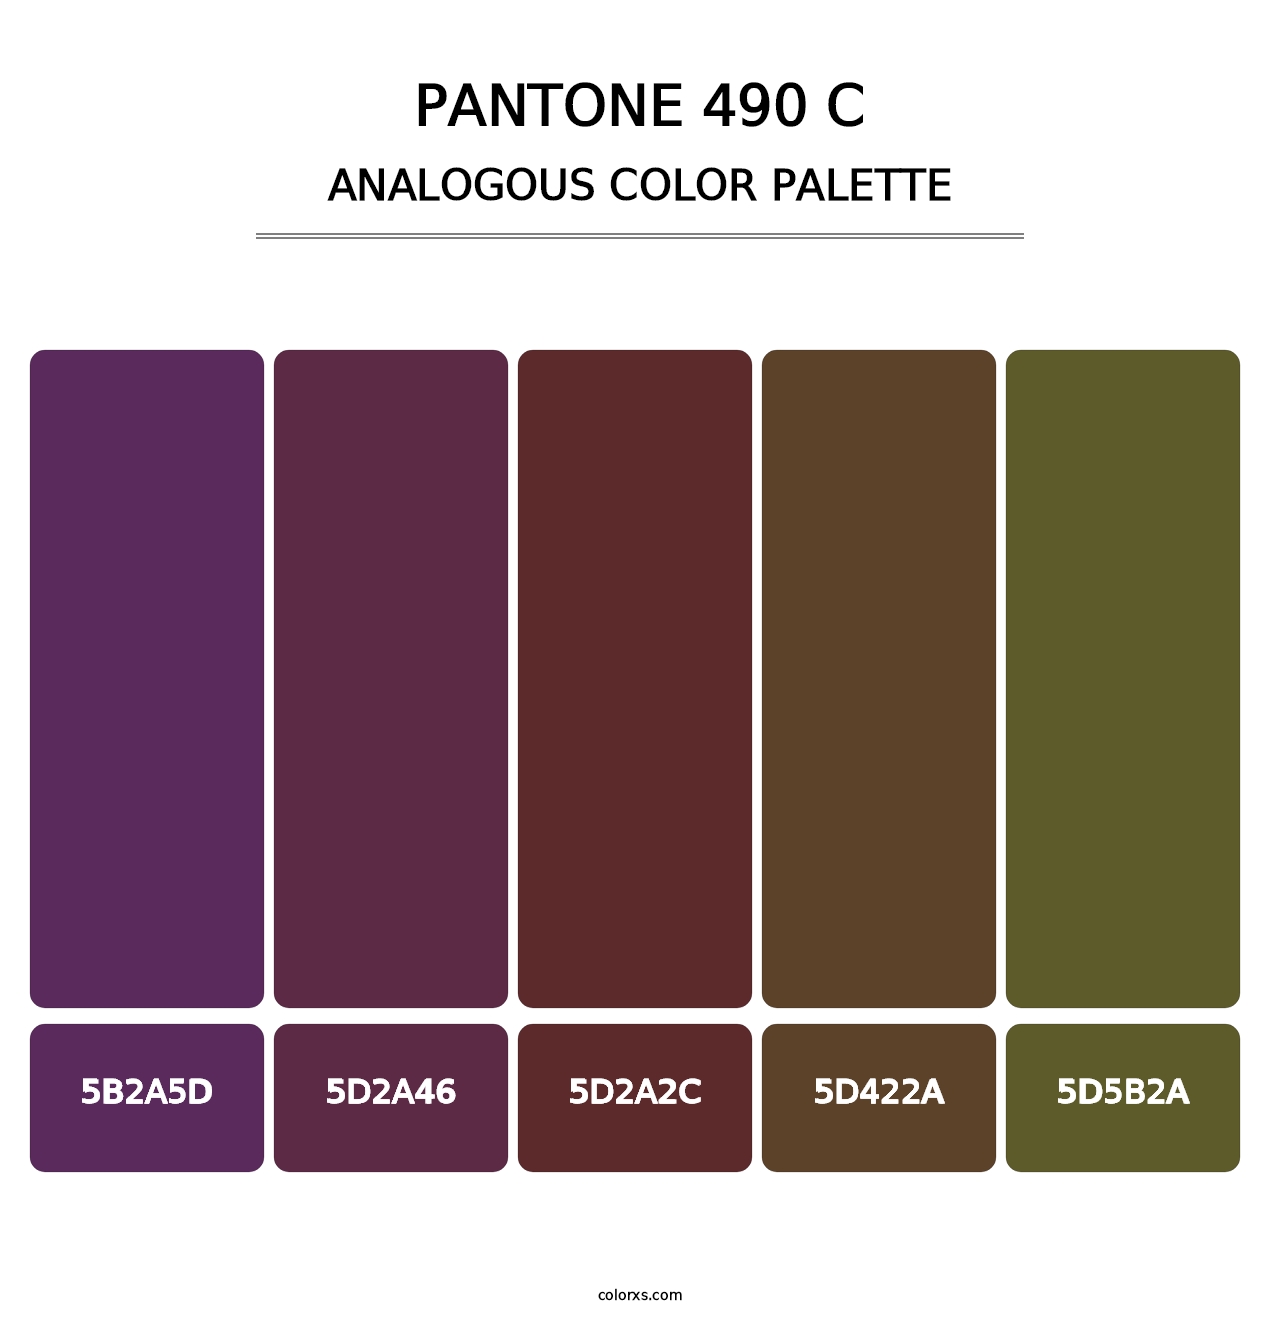 PANTONE 490 C - Analogous Color Palette